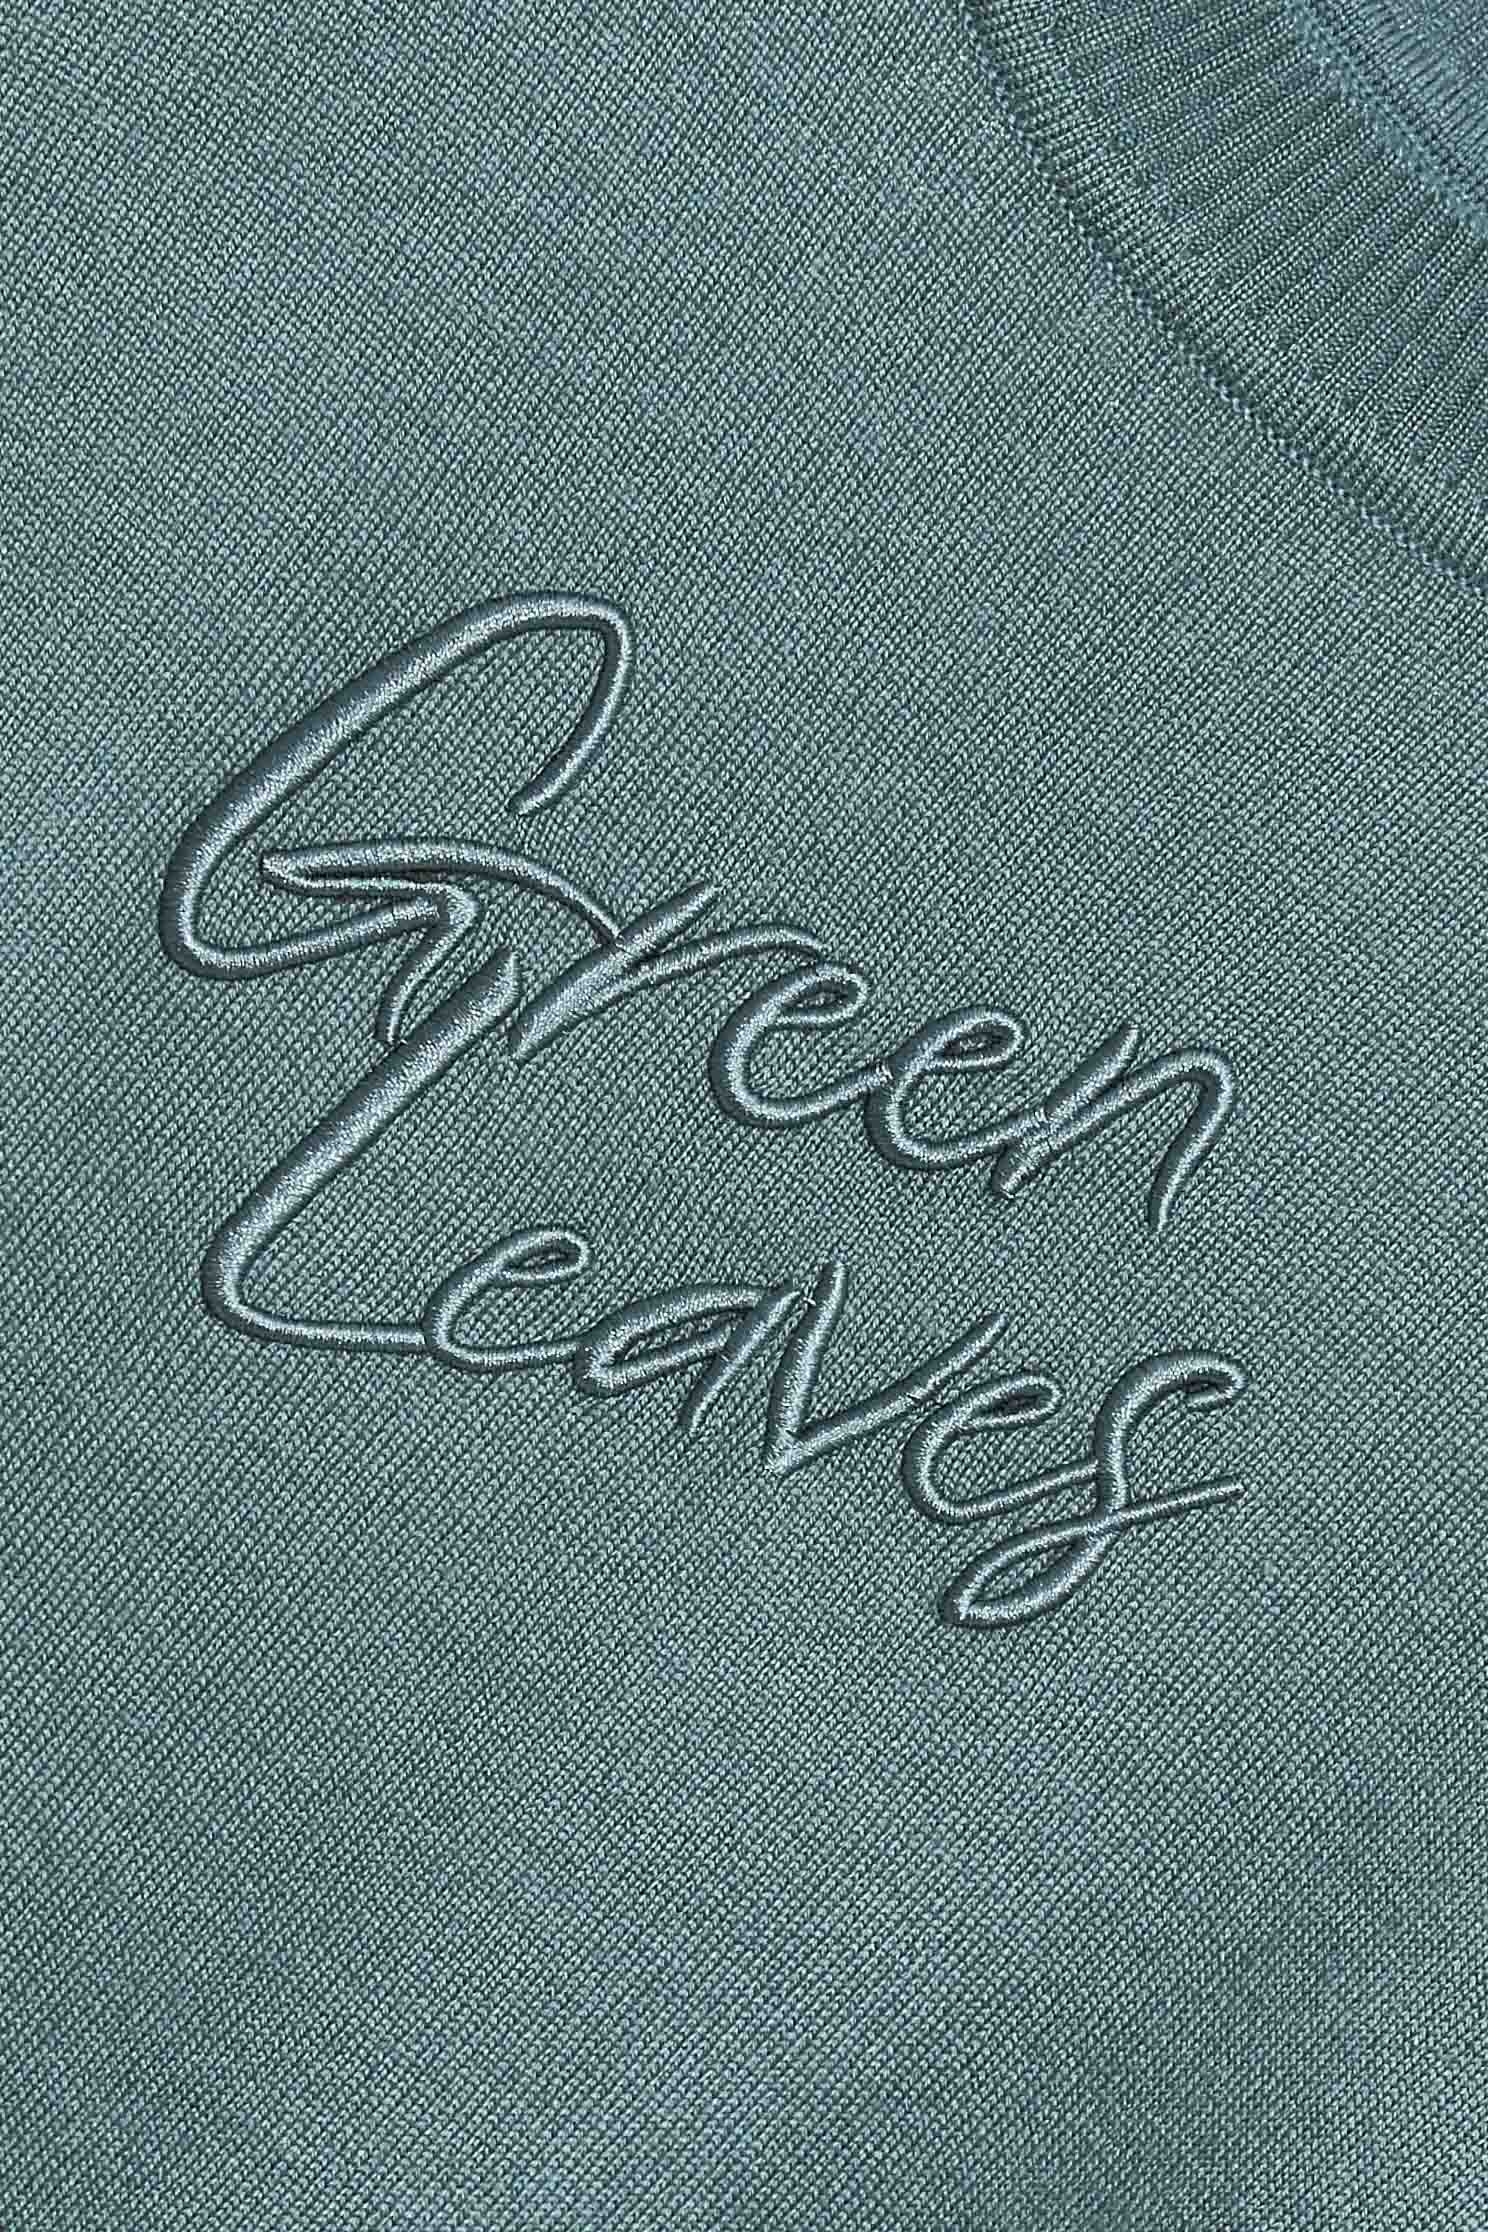 綠葉文字串刺繡針織上衣,針織 上衣,綠色 上衣,刺繡 上衣綠葉文字串刺繡針織上衣,上衣,刺繡,春夏穿搭,針織,針織上衣,針織衫